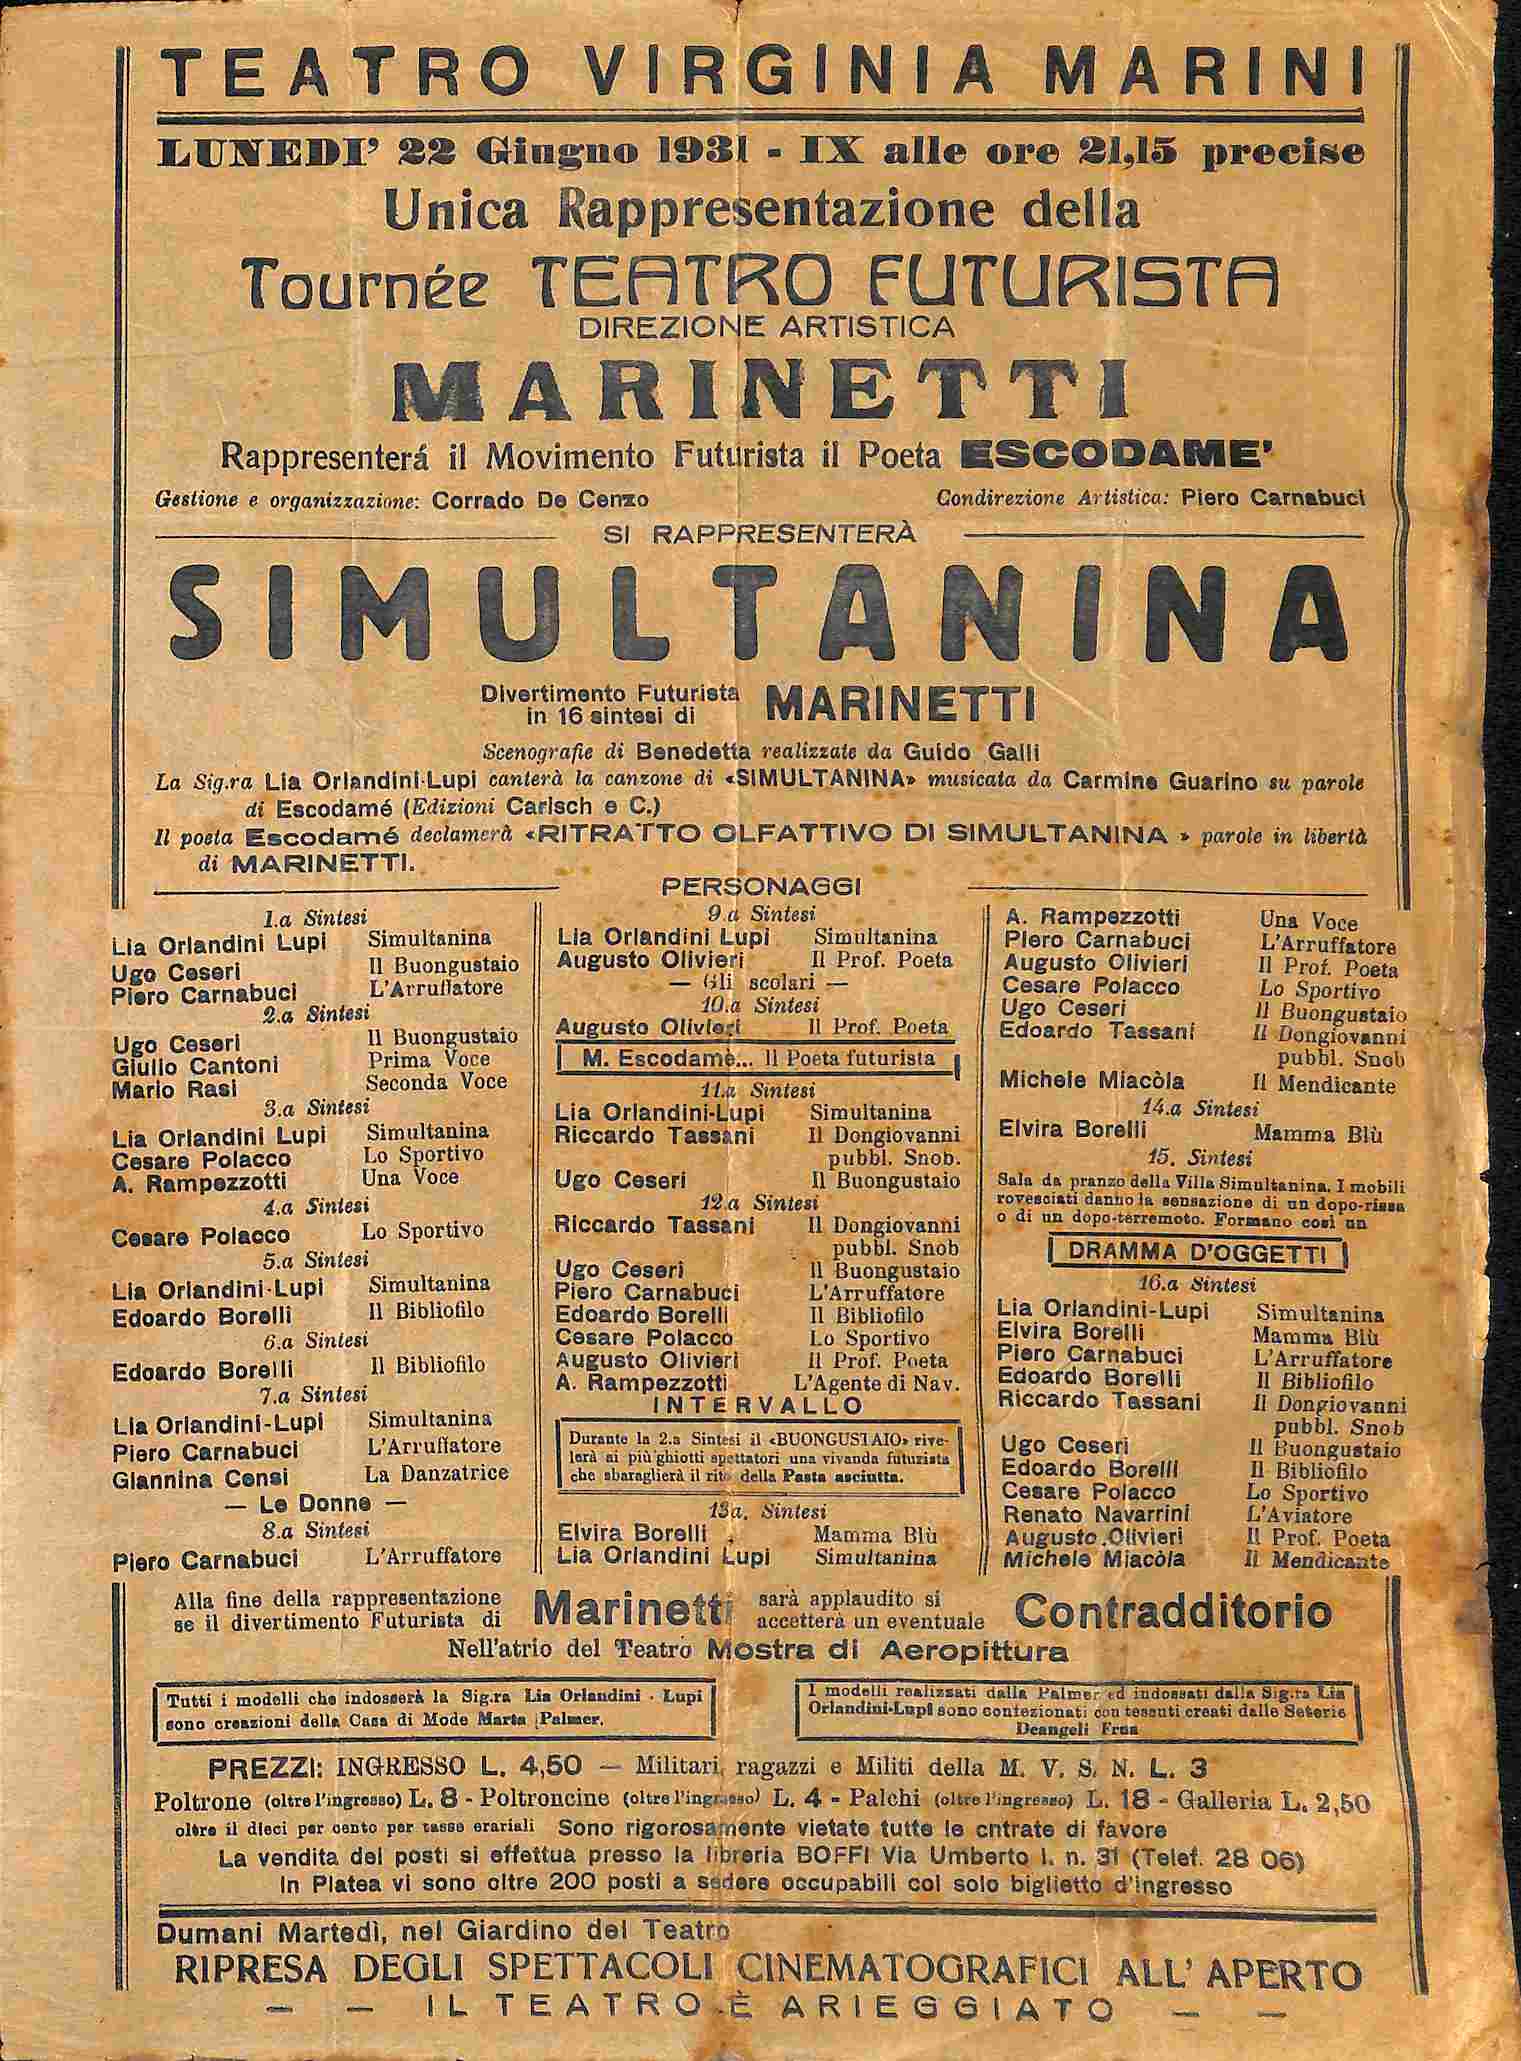 Simultanina. Unica rappresentazione della Tournee Teatro Futurista. Direzione artistica Marinetti. Teatro Virginia Marini (Alessandria). 22 giugno 1931...